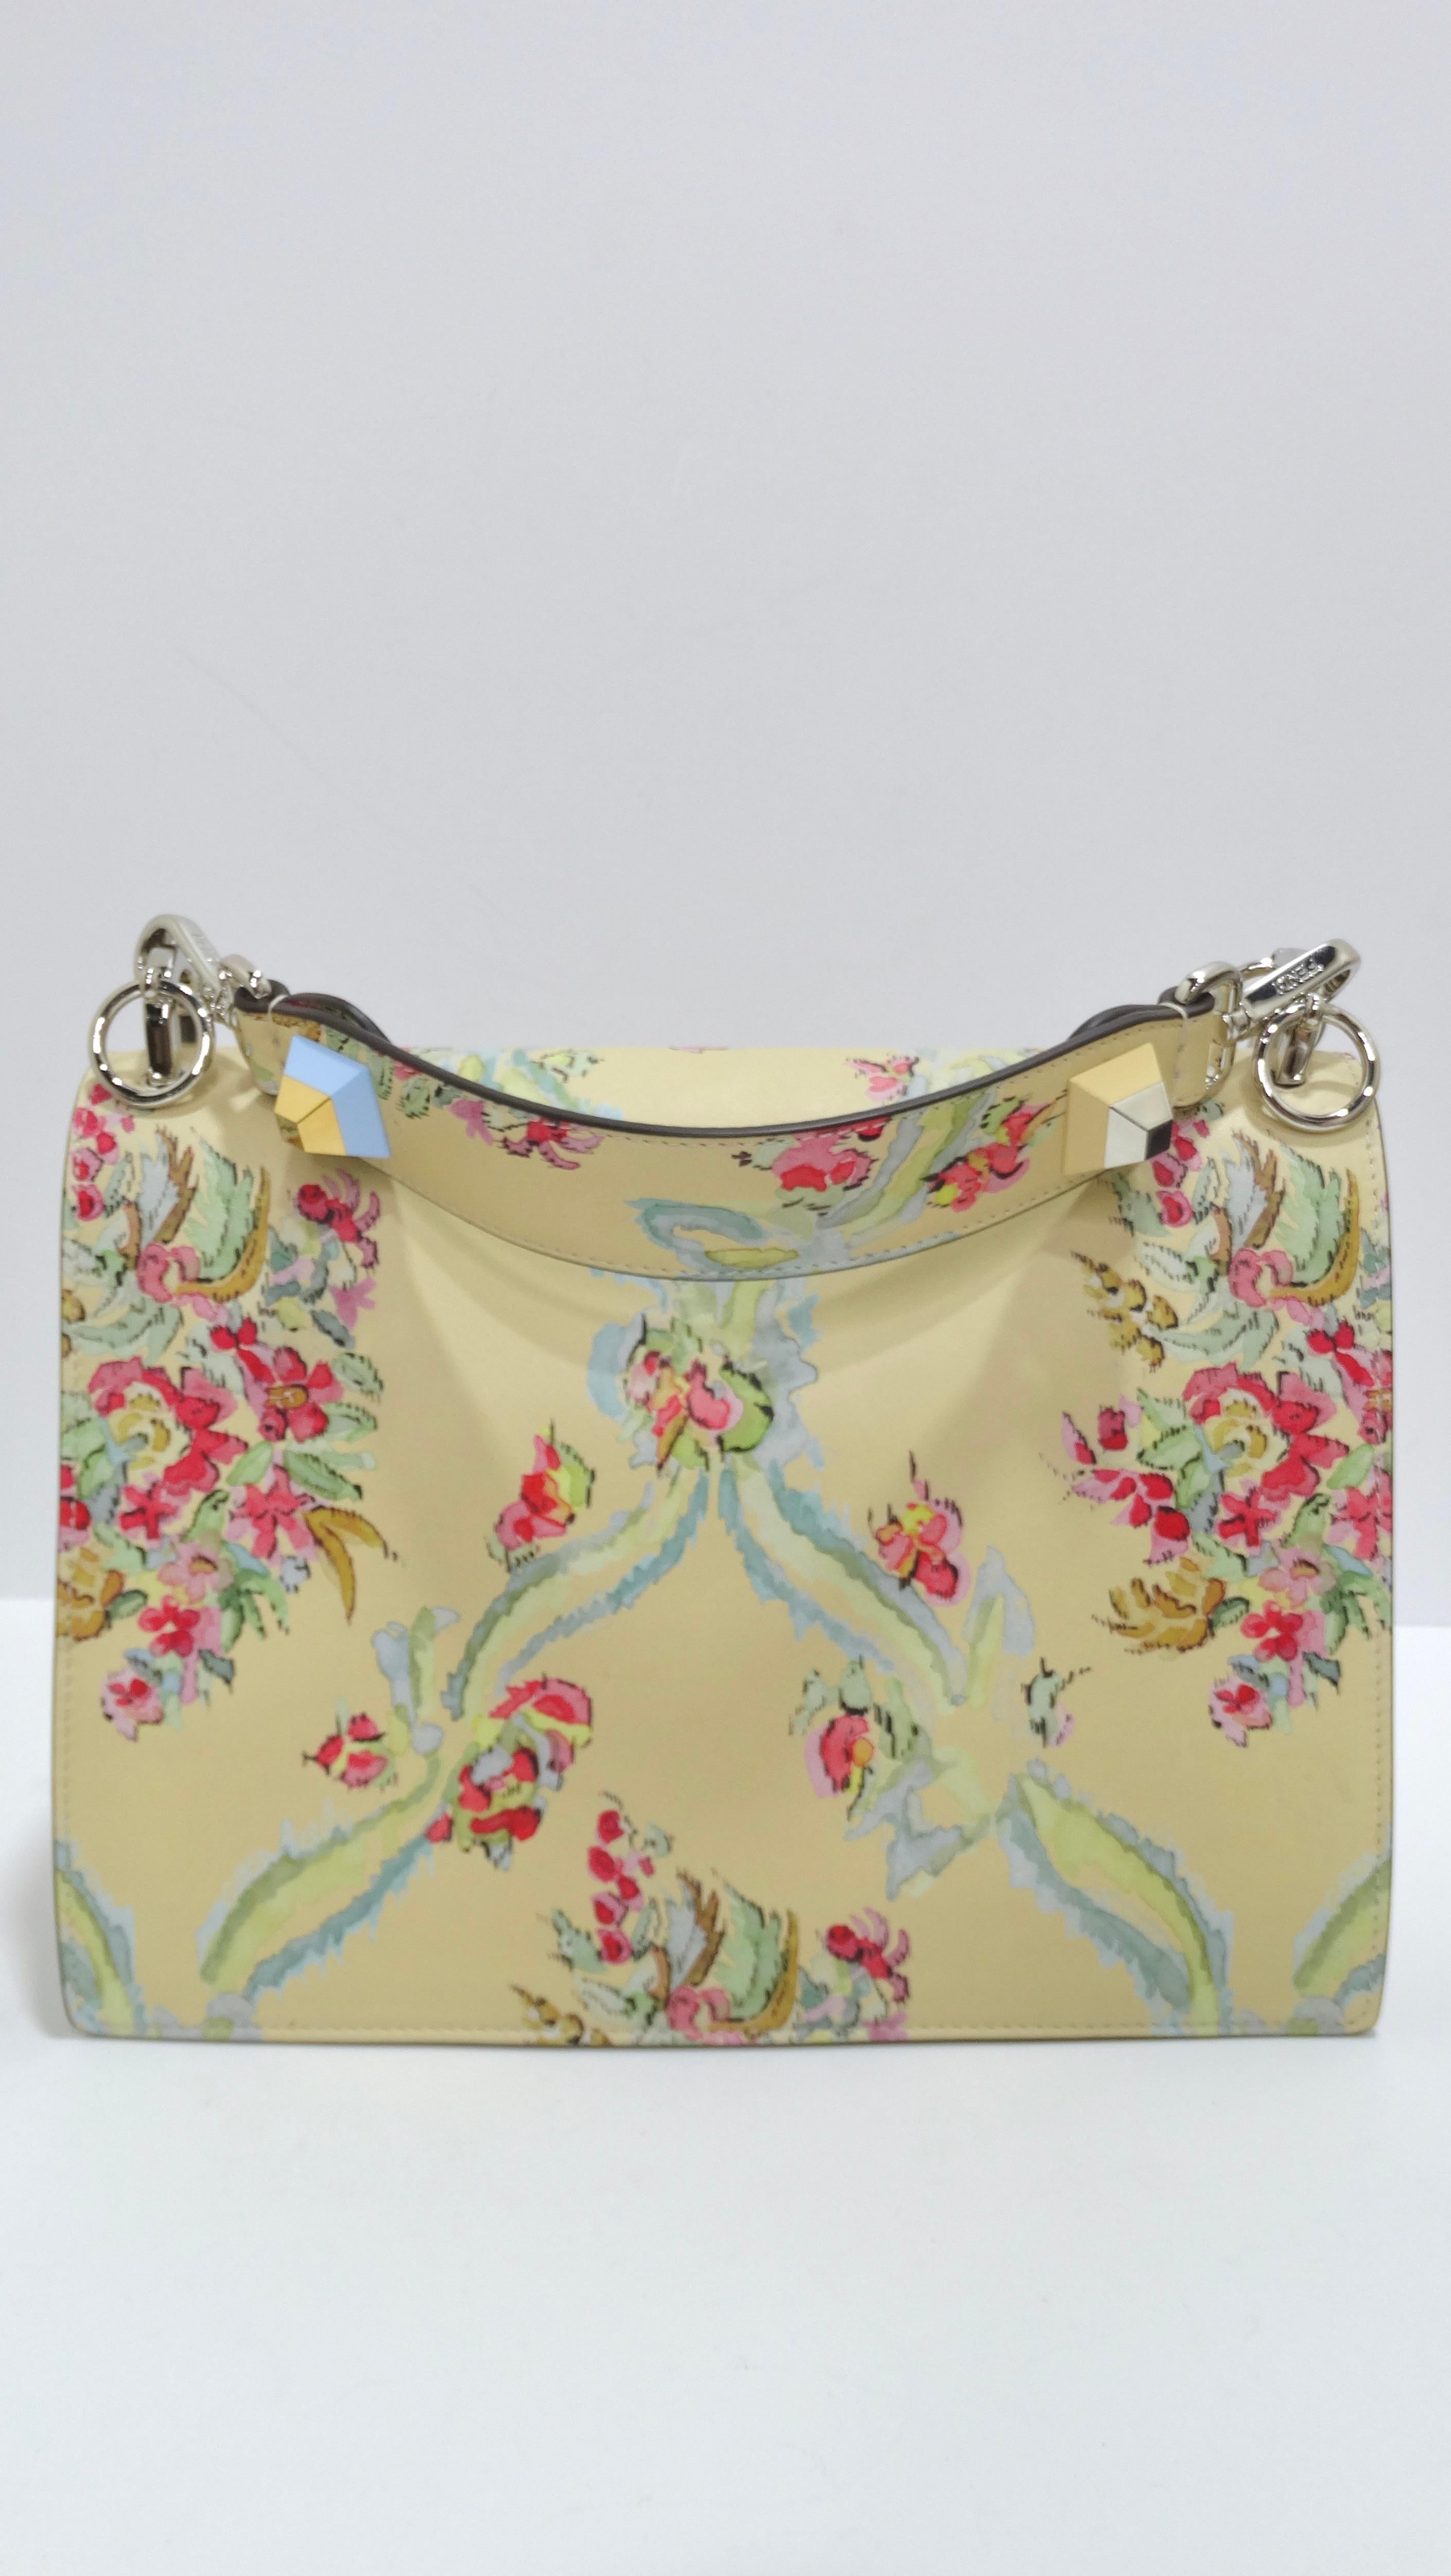 FENDI Calfskin Floral Print Rosebud Kan I Shoulder Bag 3